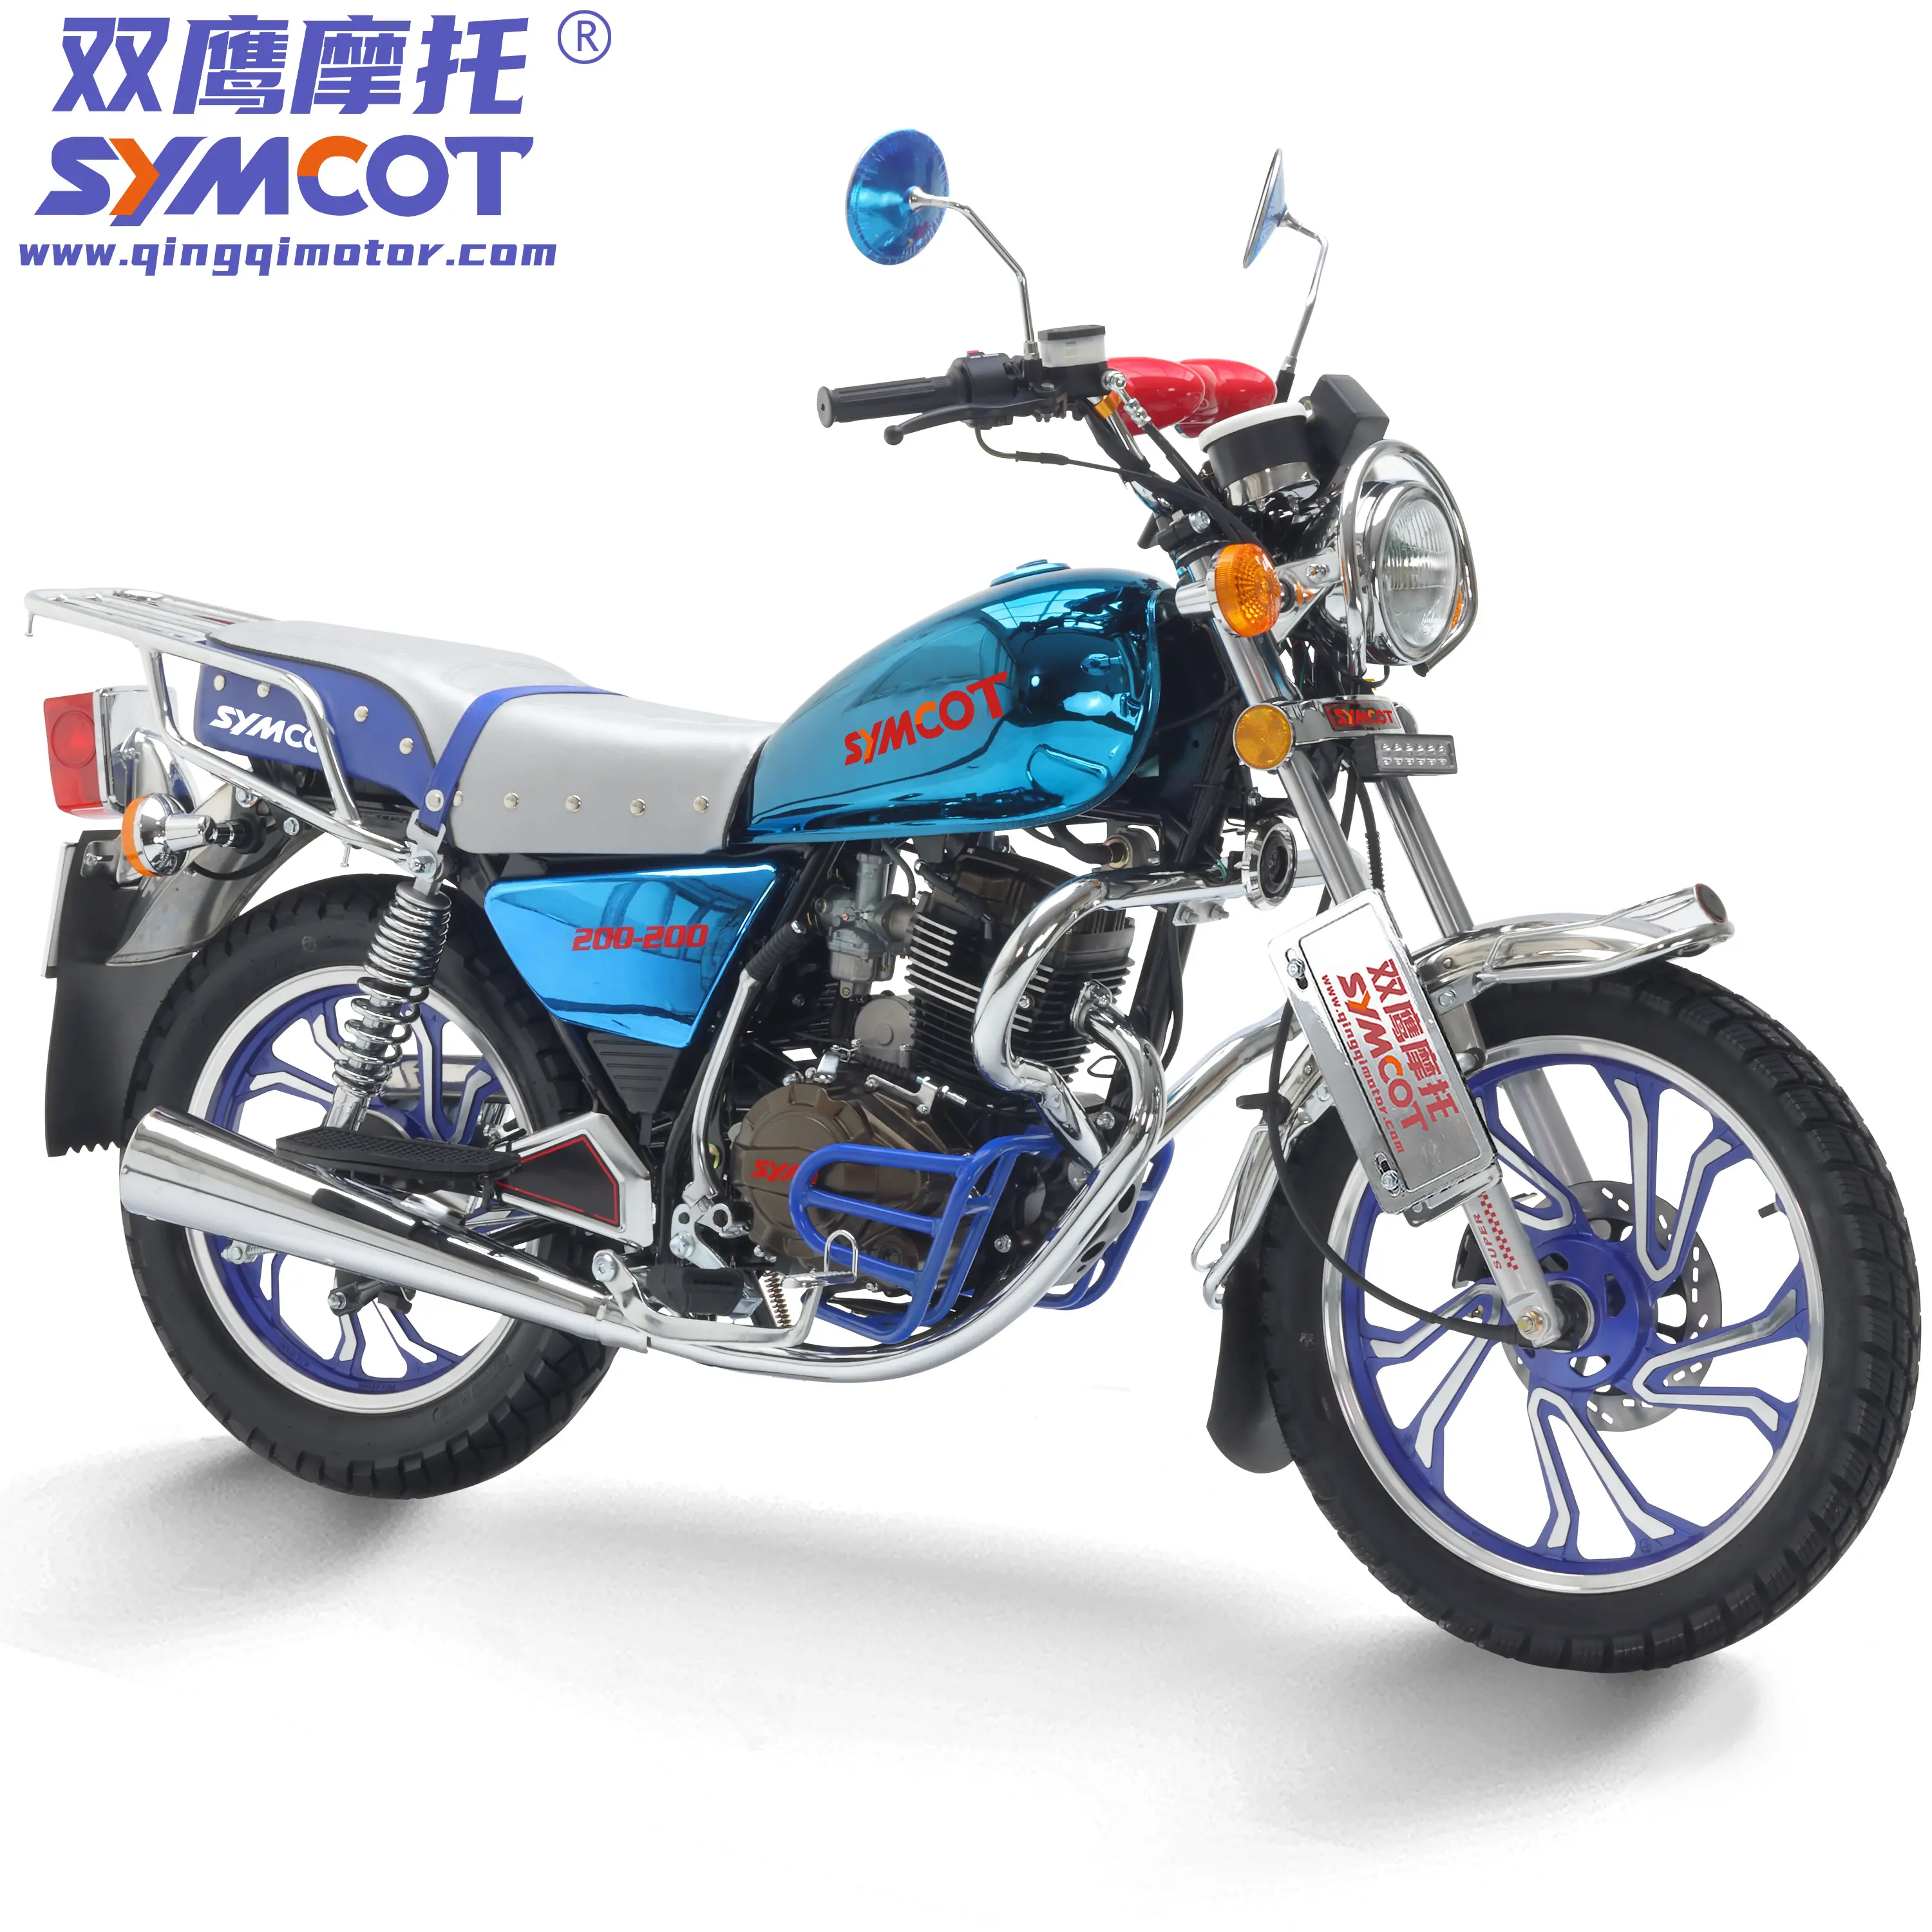 Mode nouveau modèle 200cc économique Gn modèle roue en alliage cg 125cc motos haute qualité et bas prix, prêt à expédier